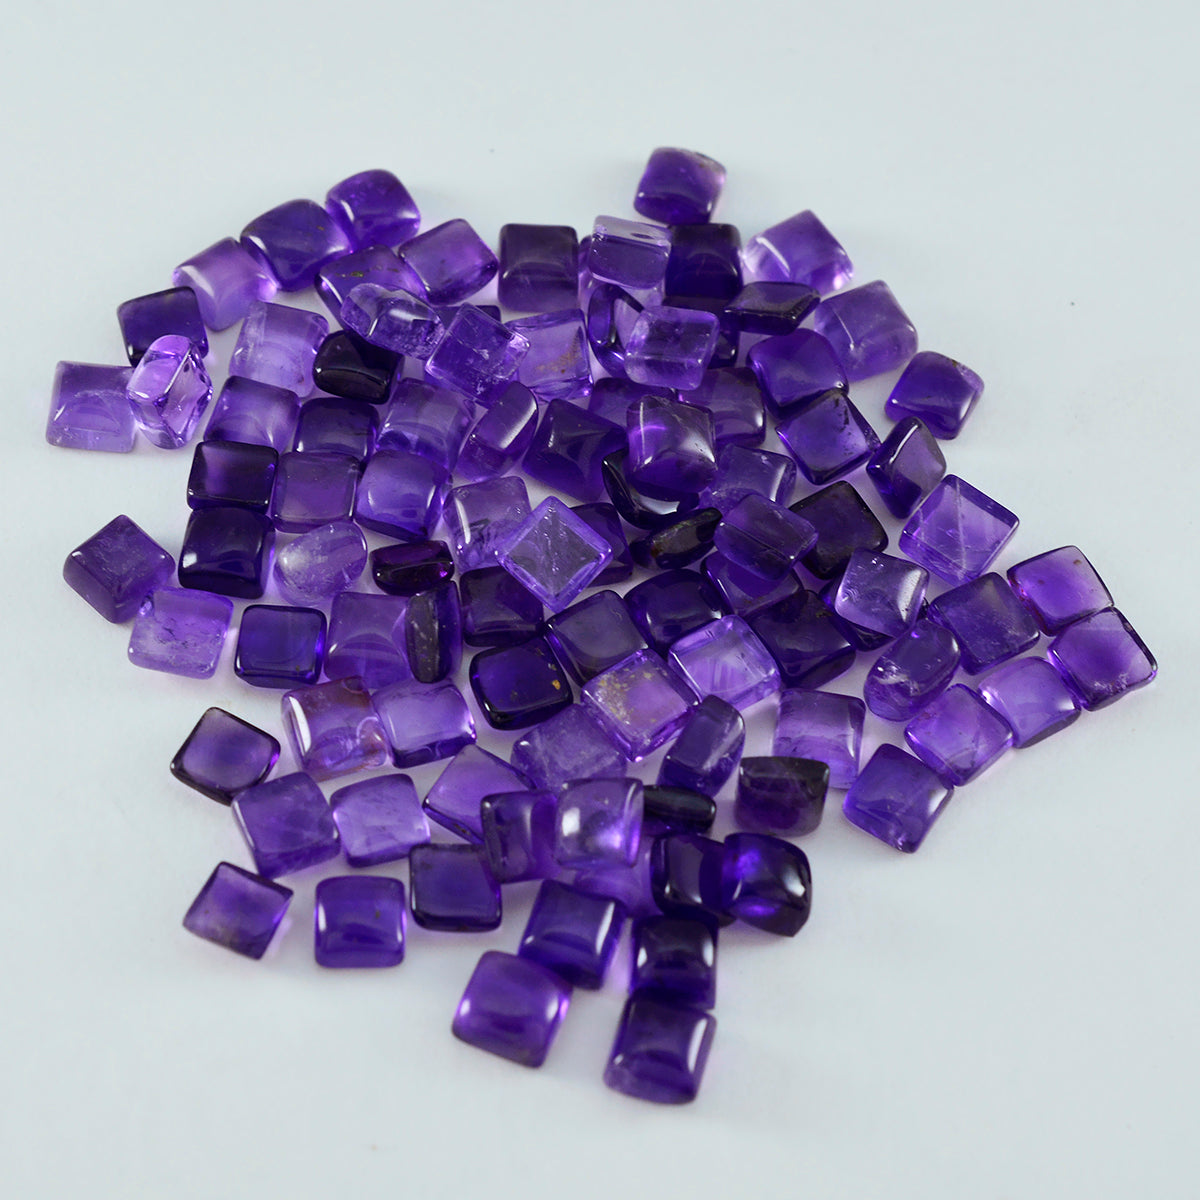 Riyogems 1 Stück lila Amethyst-Cabochon, 5 x 5 mm, quadratische Form, schöner Qualitäts-Edelstein